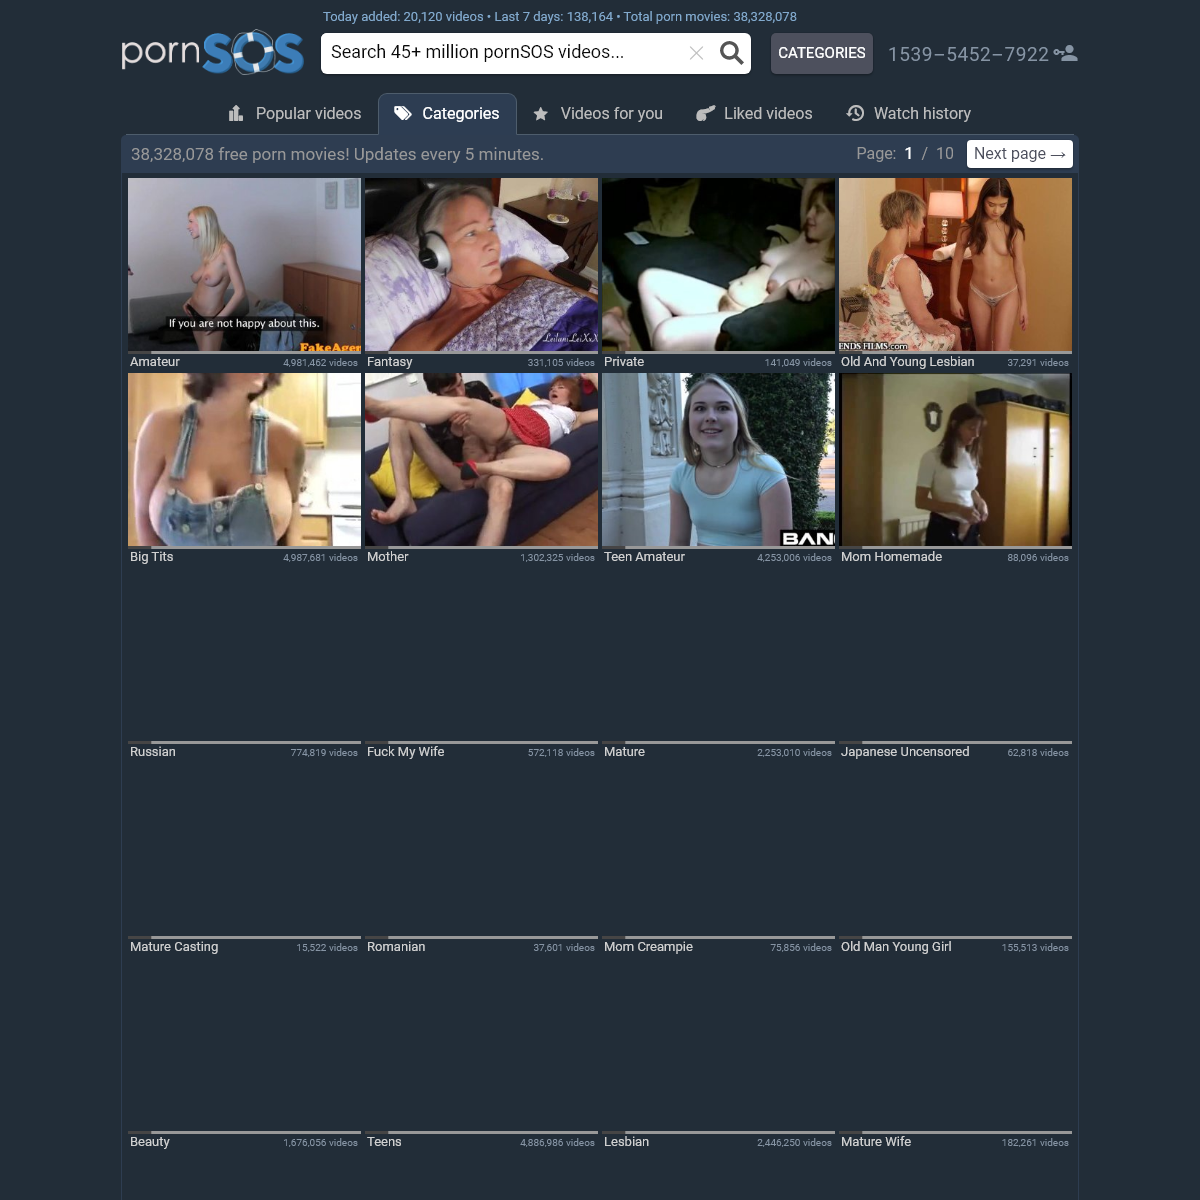 A complete backup of www.pornsos.com